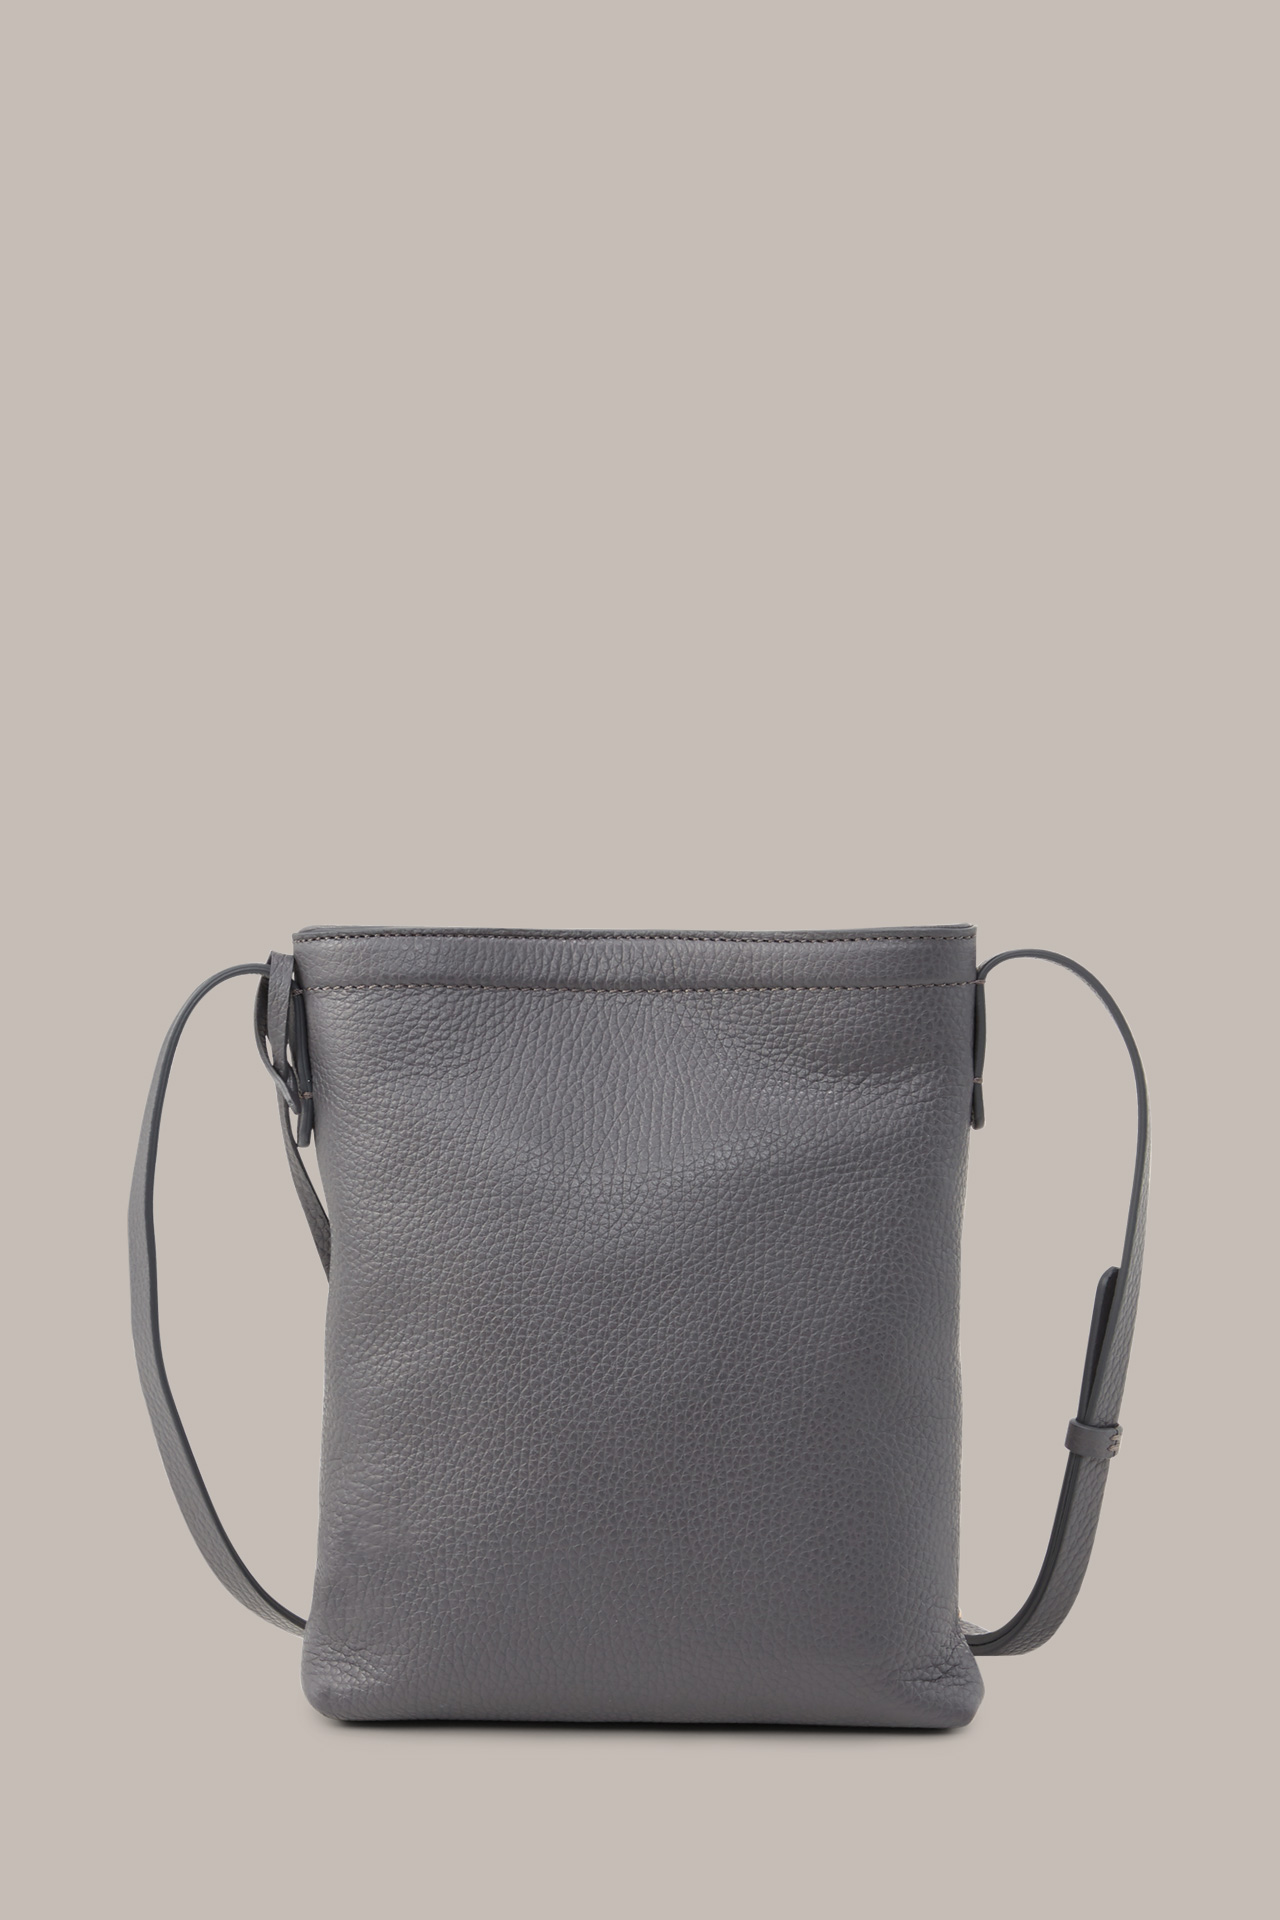 Crossbody-Bag aus Nappaleder in Grau